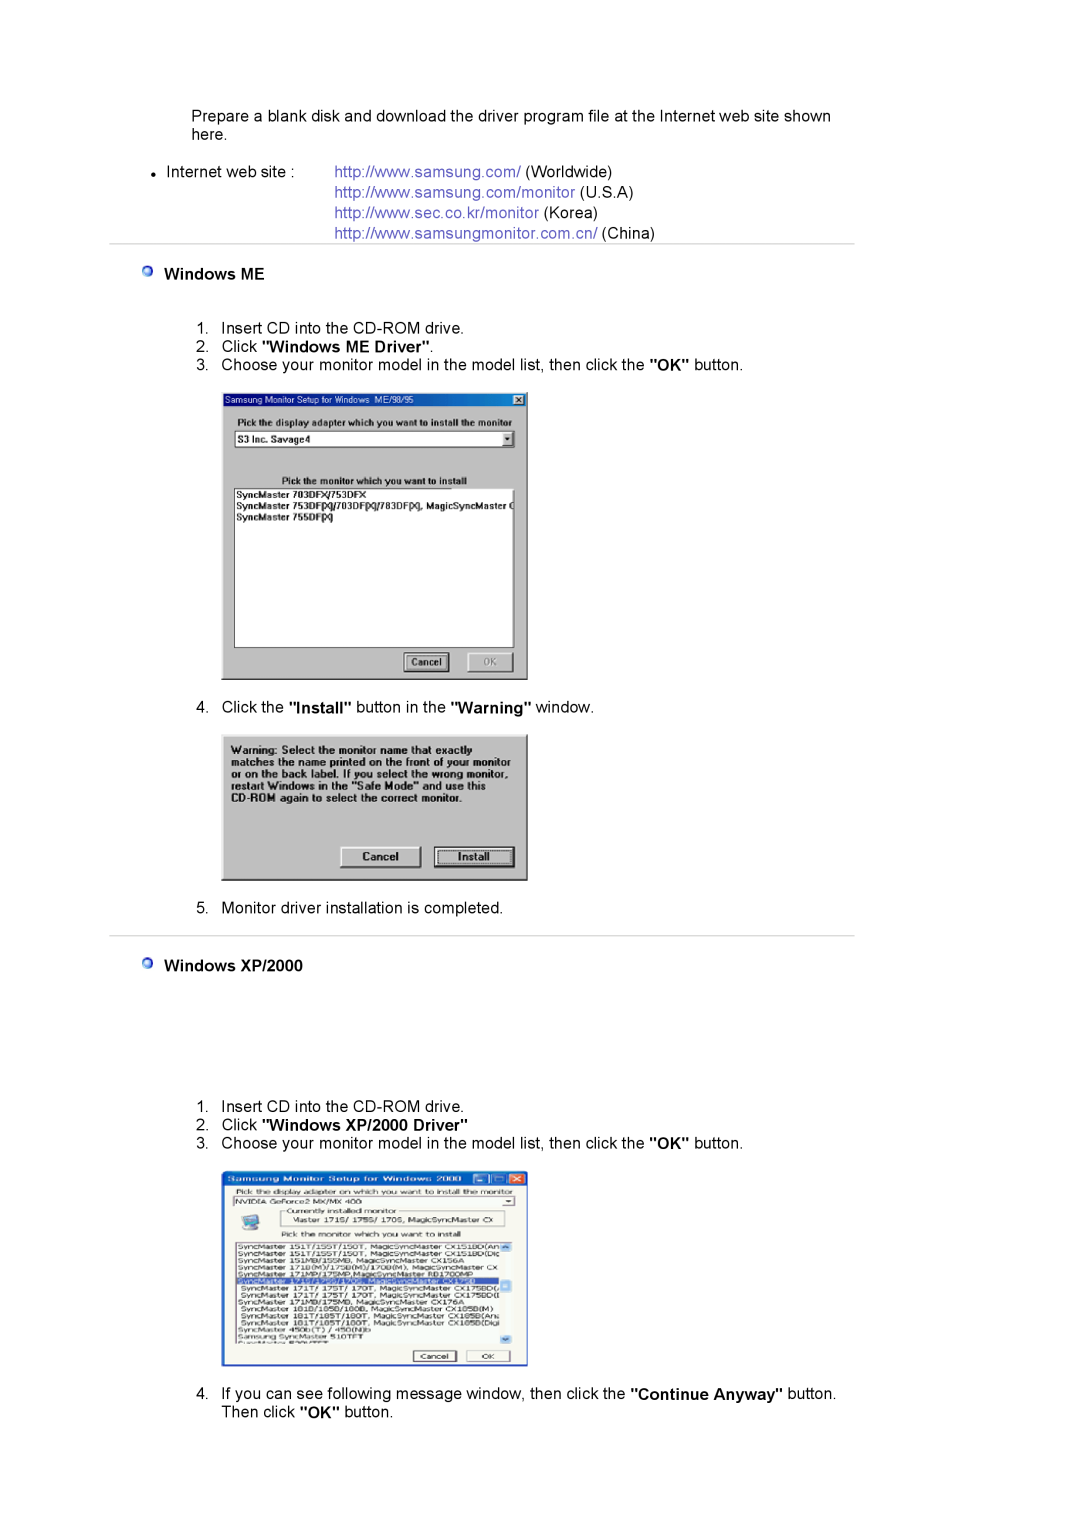 Samsung 710NT manual Click Windows ME Driver, Click Windows XP/2000 Driver 